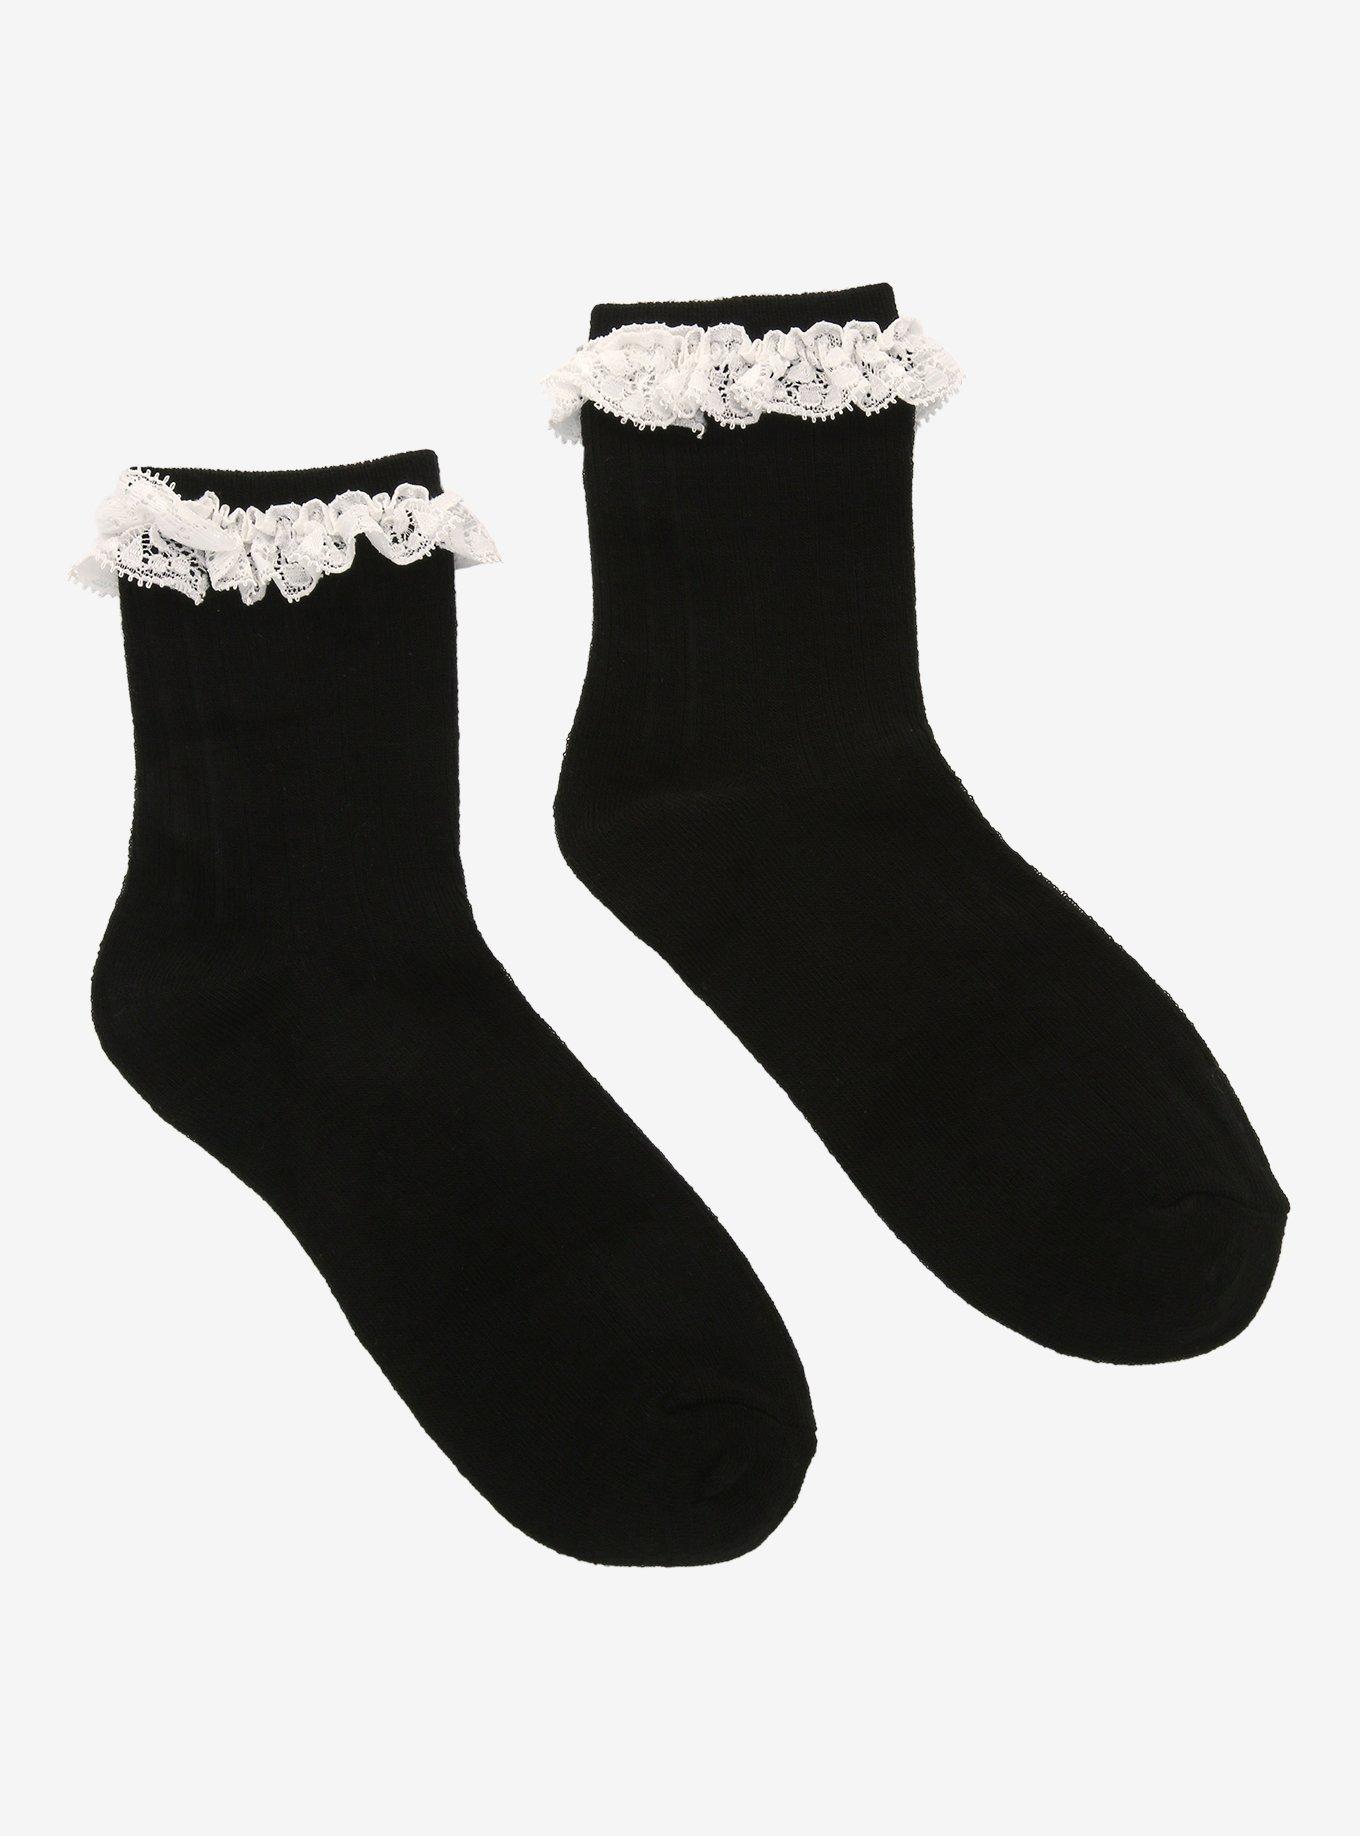 Black & White Lace Ankle Socks, , alternate